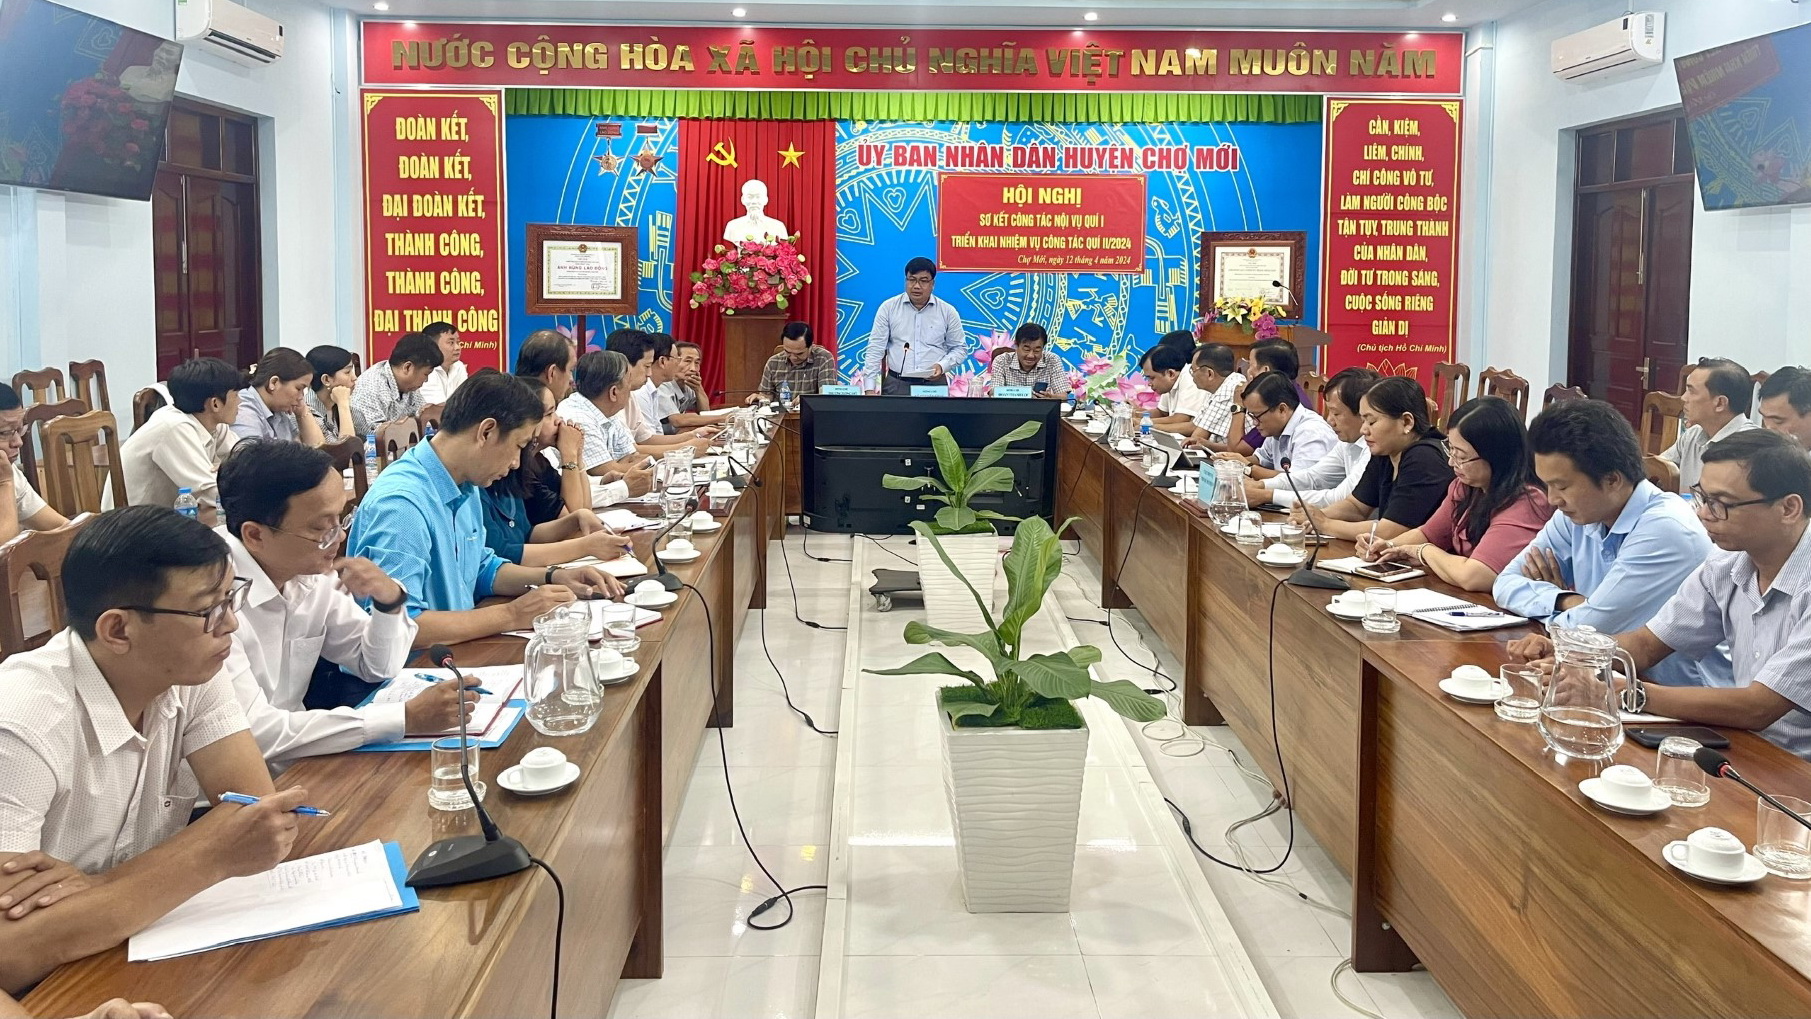 Sở Nội vụ tỉnh An Giang tổ chức Hội nghị sơ kết công tác nội vụ quý I tại Chợ Mới